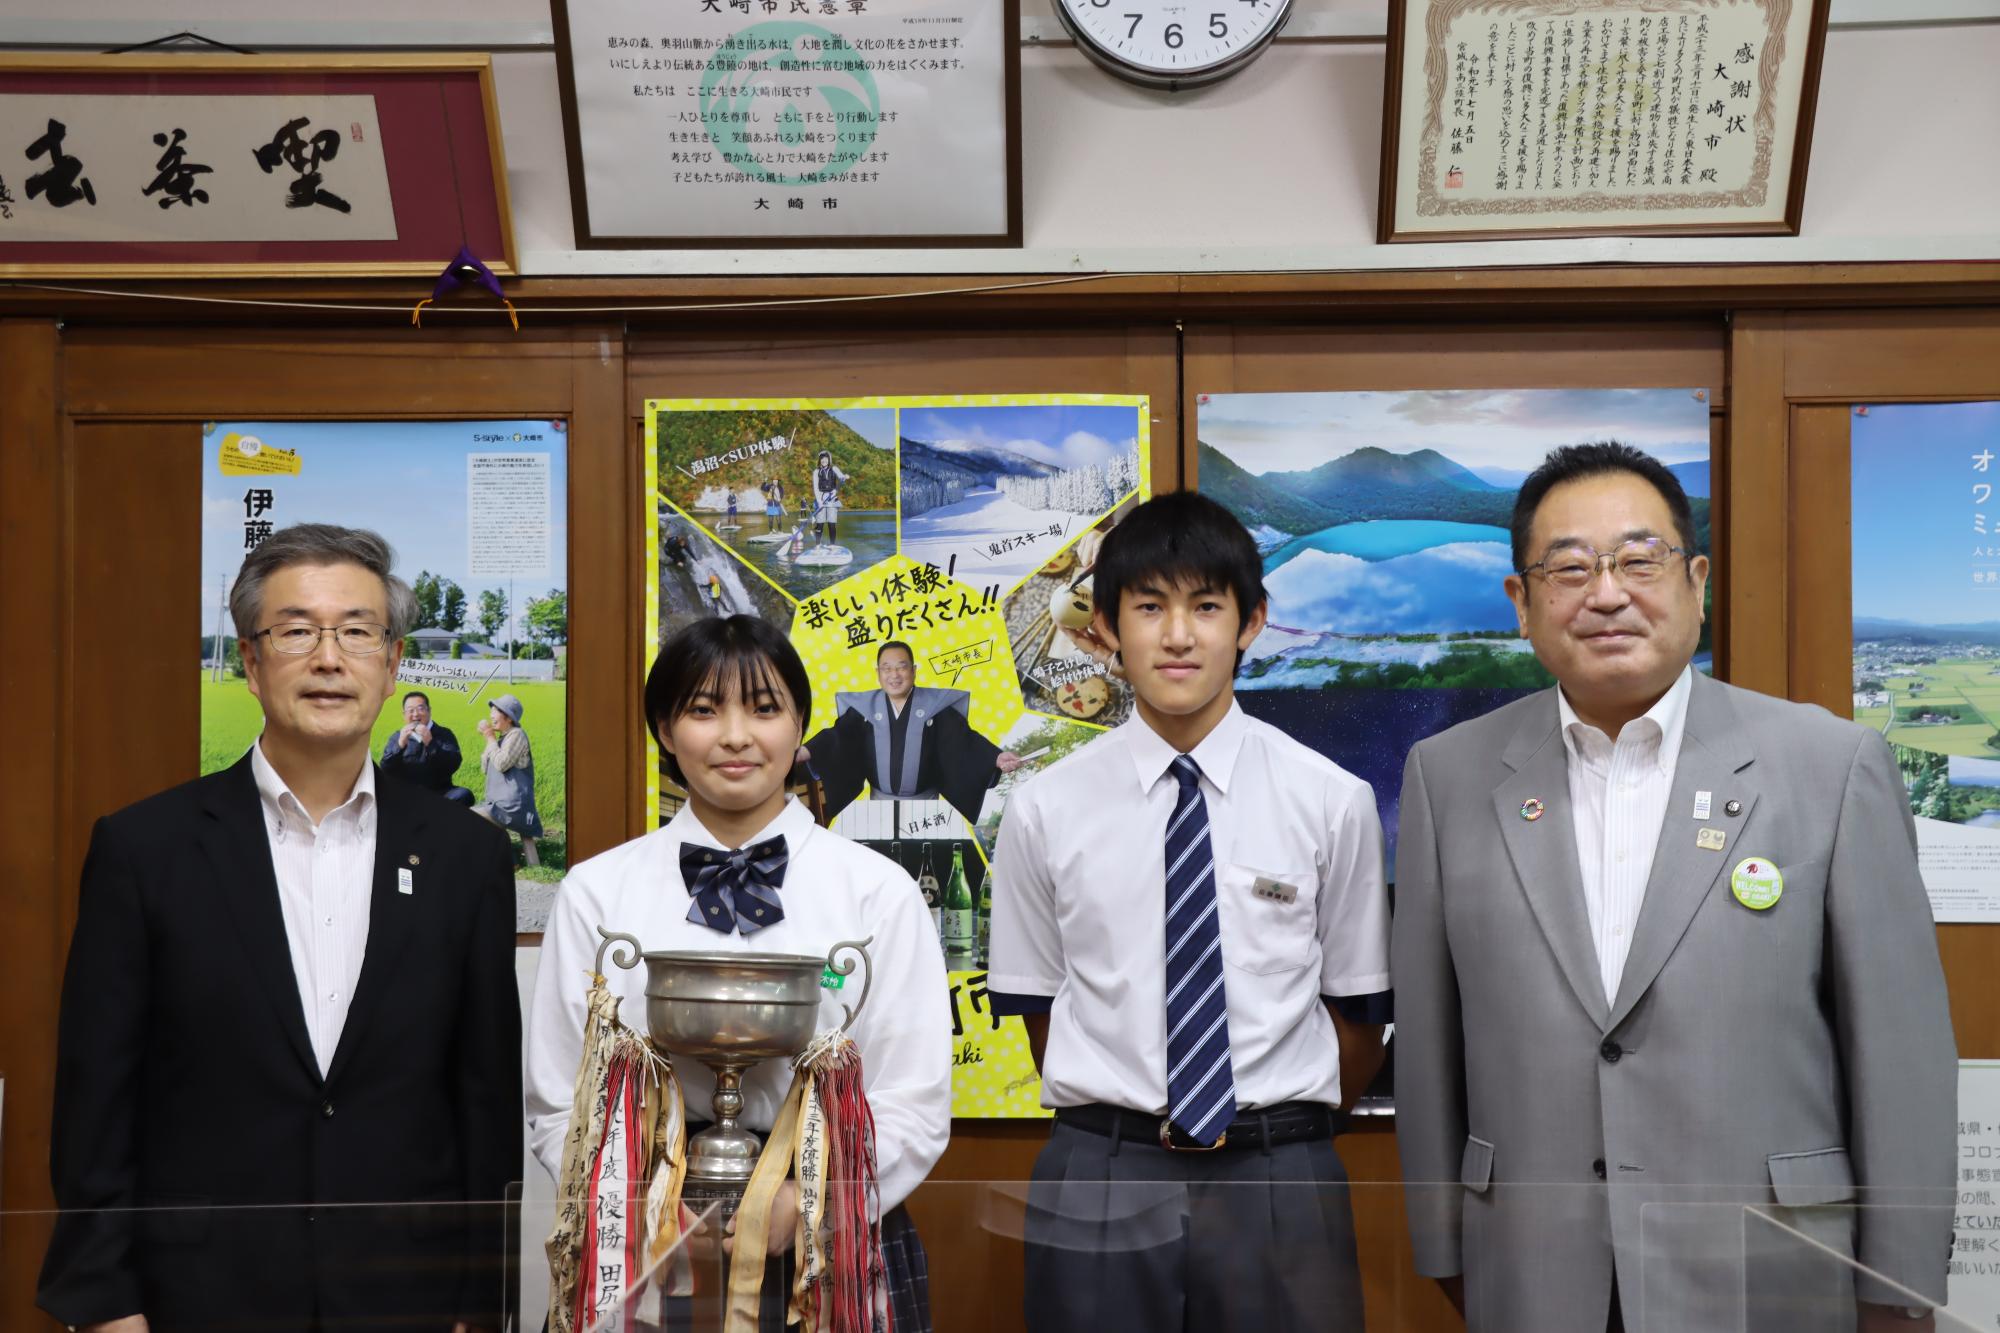 令和3年度全国中学校体育大会に出場したことを報告に訪れた古川南中学校と田尻中学校の生徒